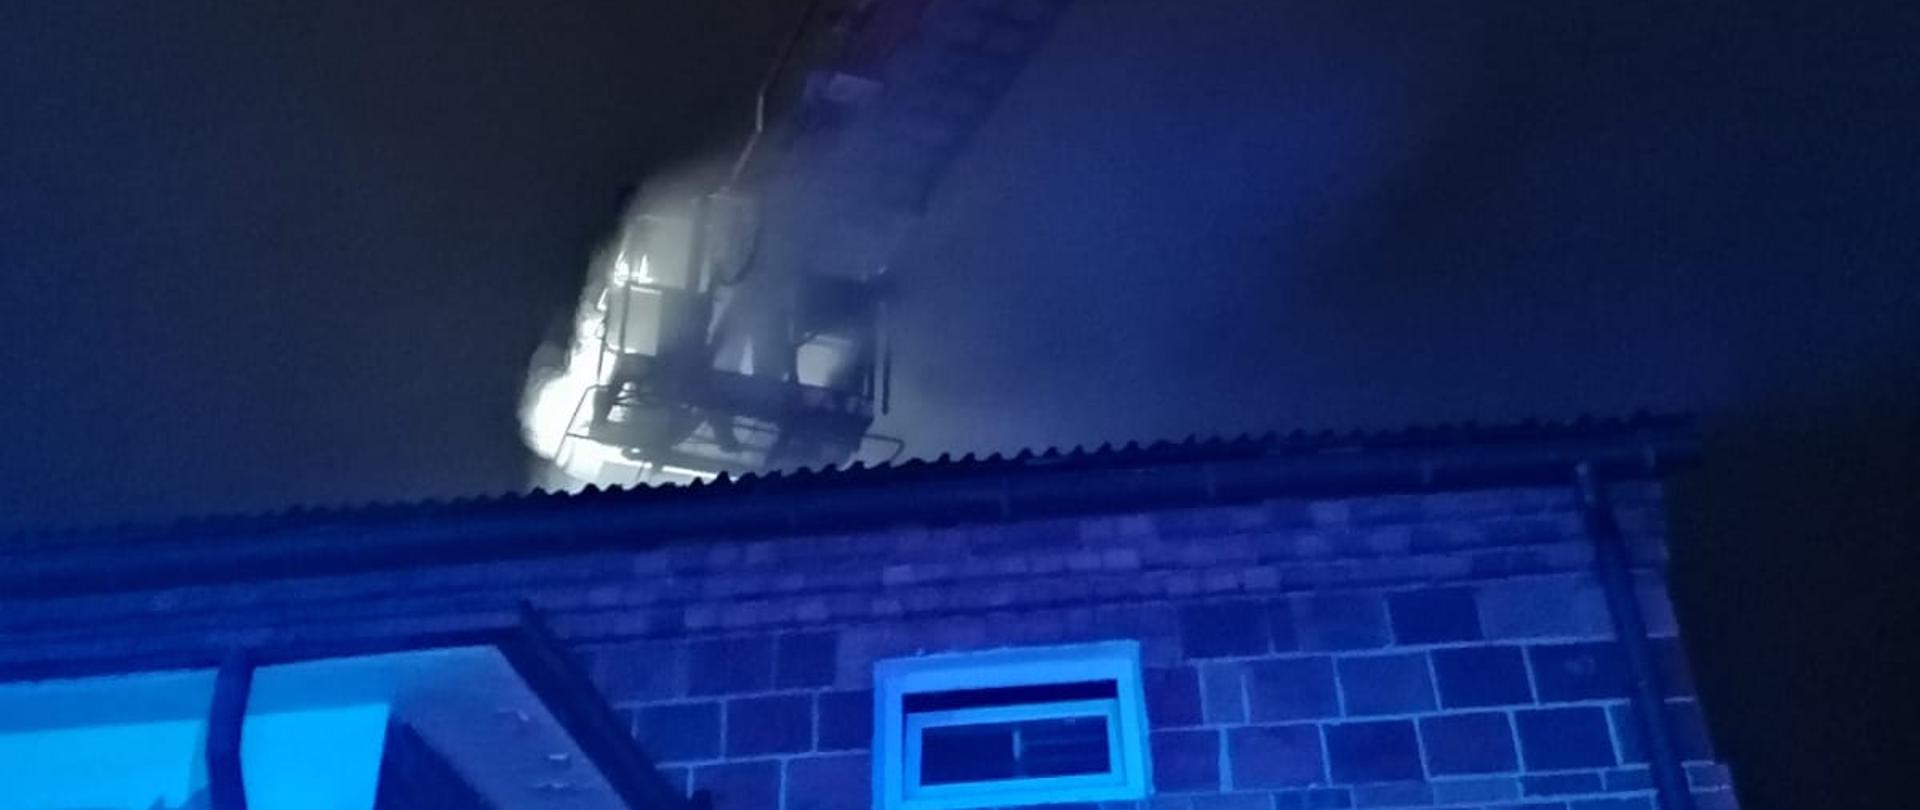 Zdjęcie w porze nocnej. Widać budynek w którym trwał pożar sadzy w kominie. Przed budynkiem pojazd straży pożarnej, podnośnik hydrauliczny.